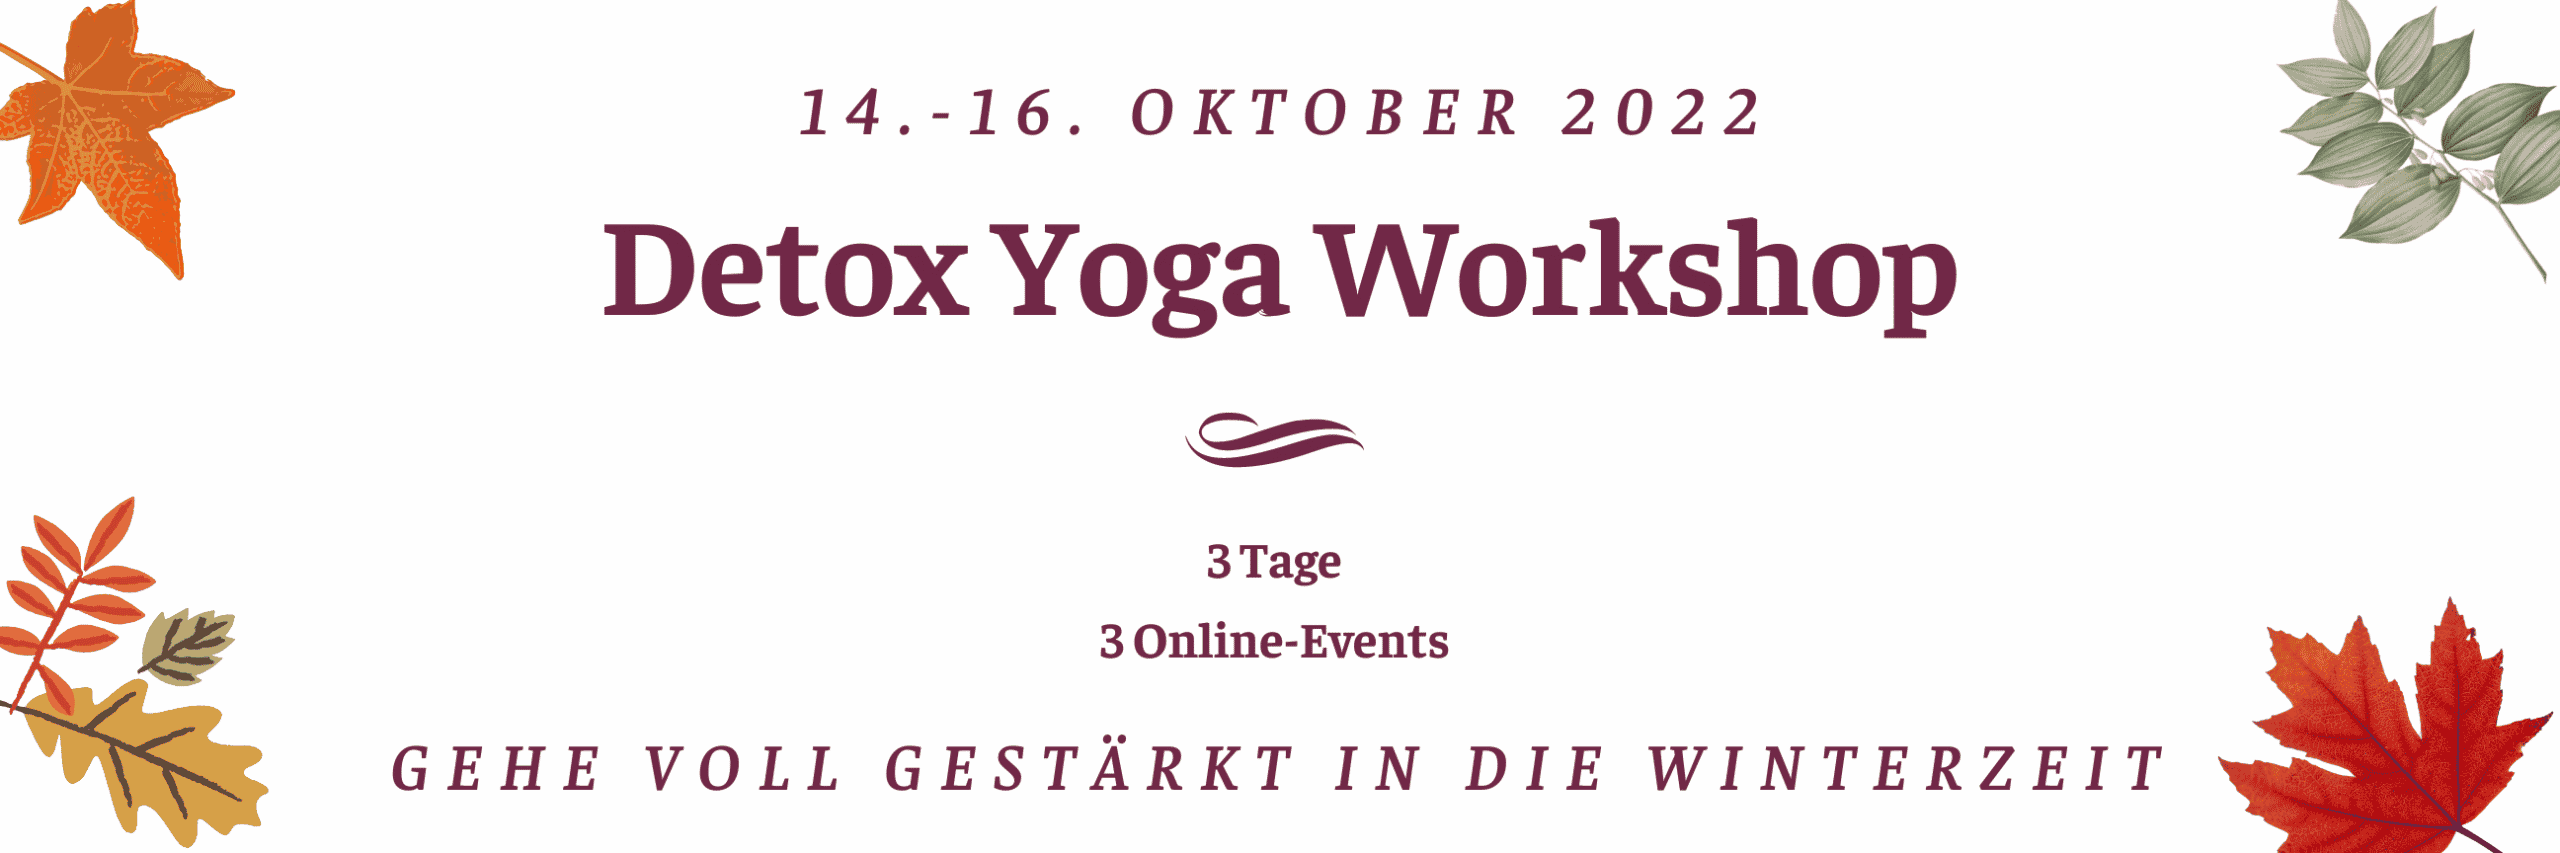 Ankündigung Detox Yoga Workshop